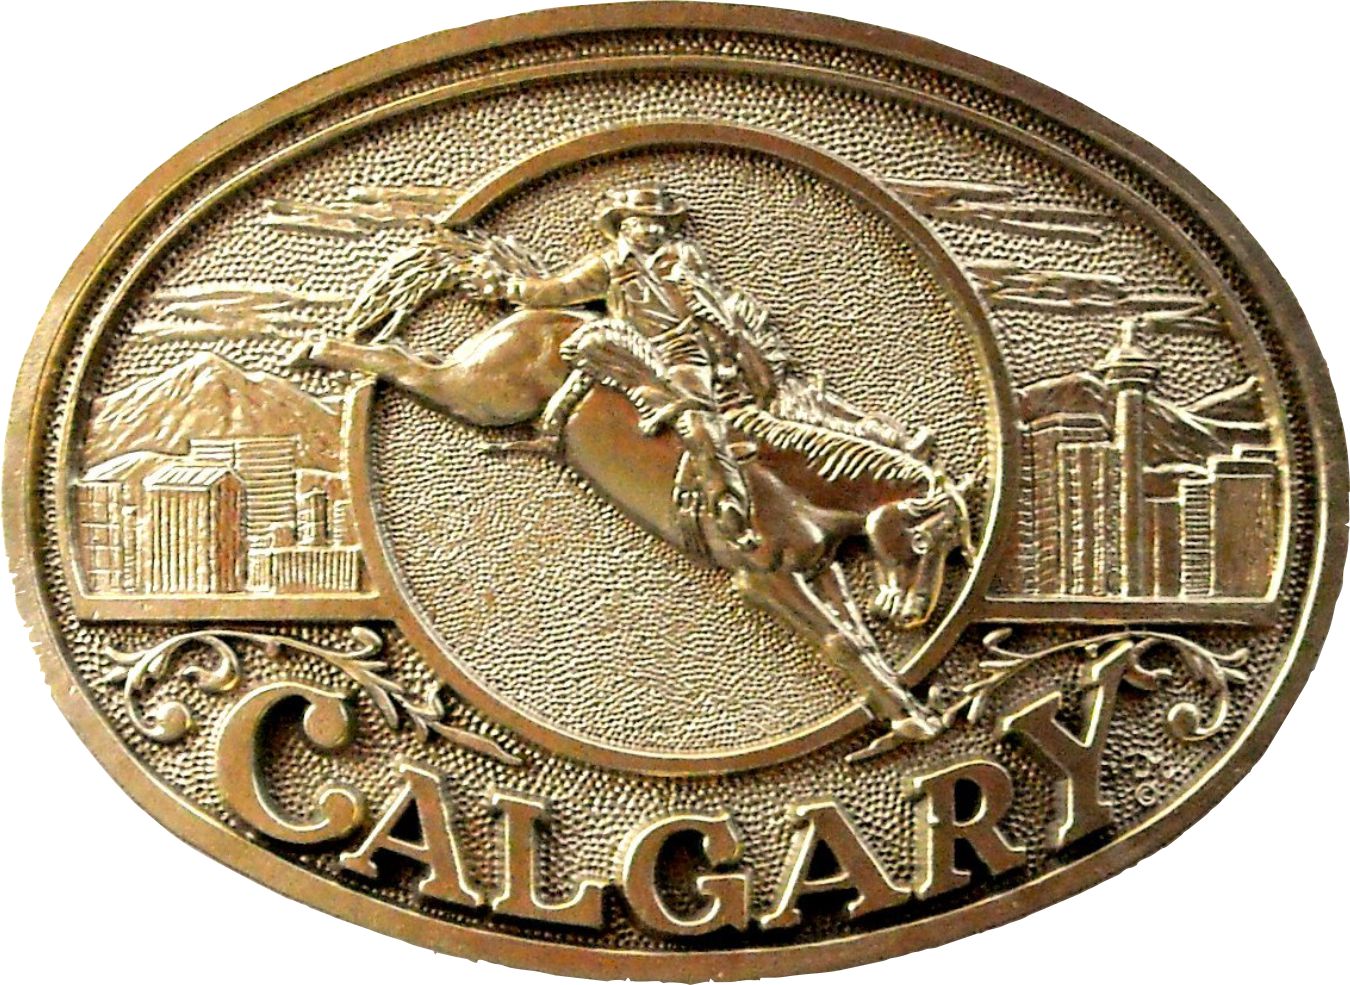 Calgary Stampede 2015 buckle